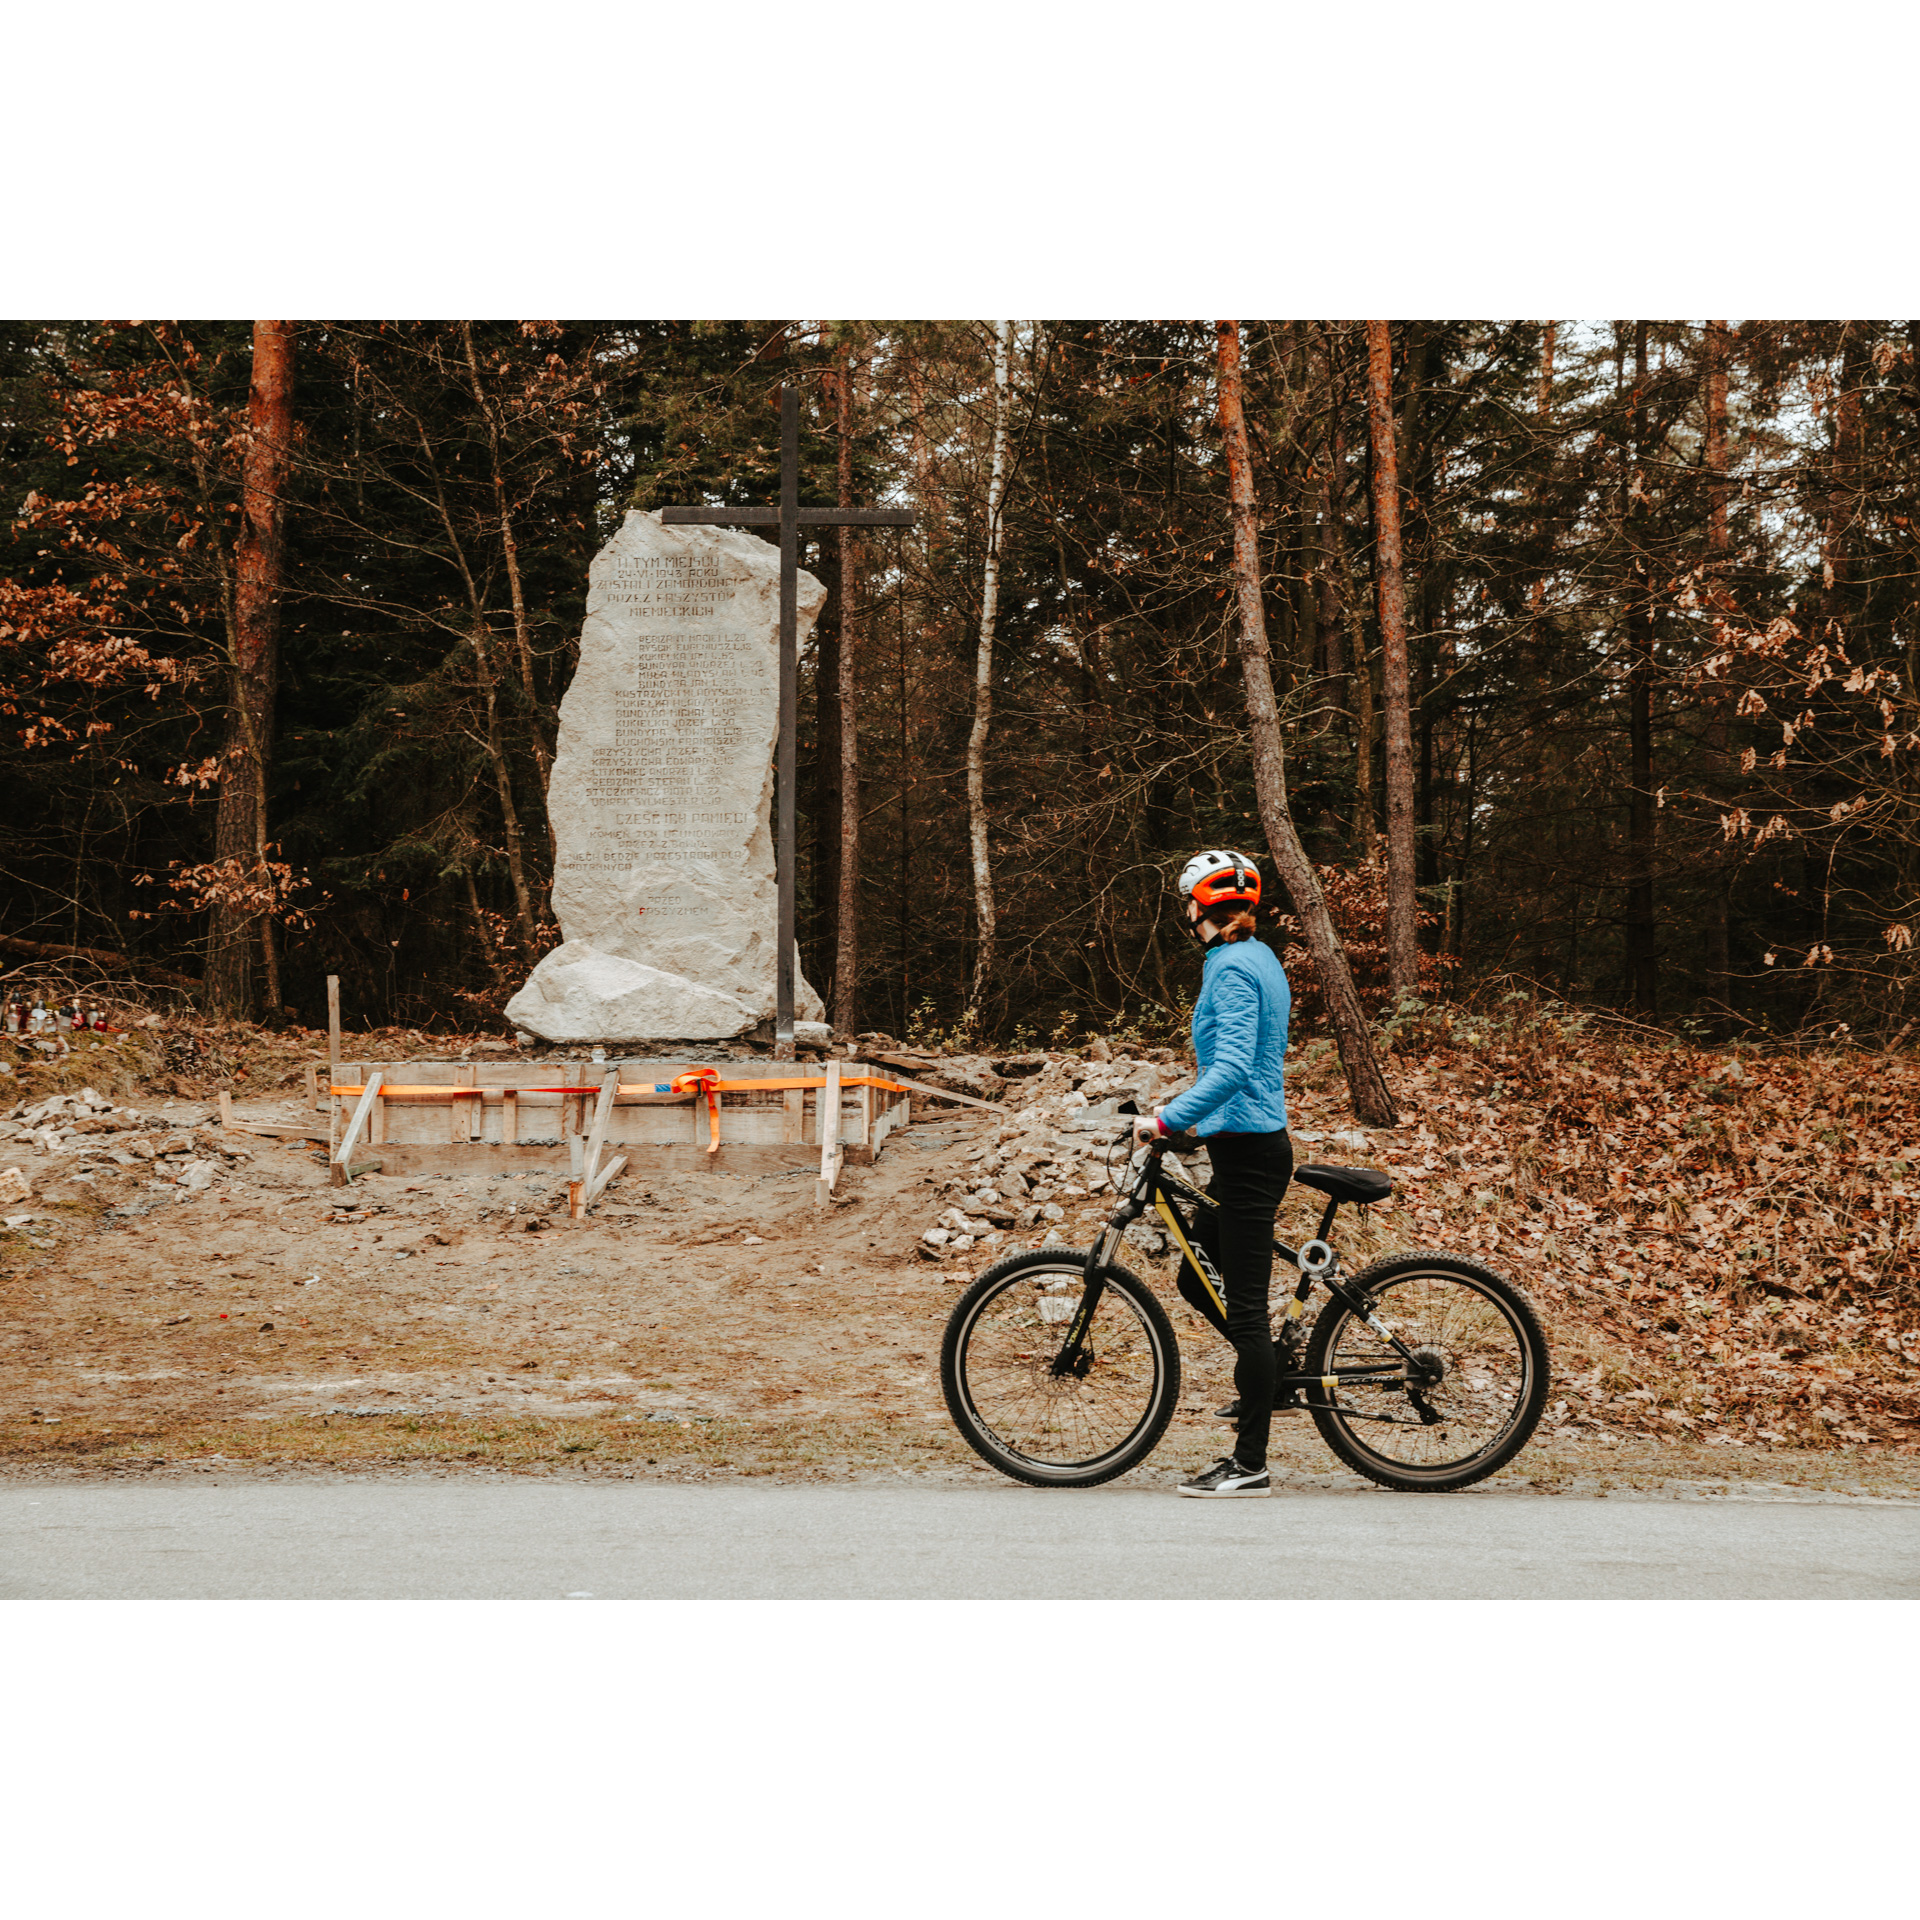 Rowerzystka w niebieskiej kurtce i białym kasku przytrzymująca rower i przyglądająca się pamiątkowemu kamieniowi stojącemu przy leśnych drzewach